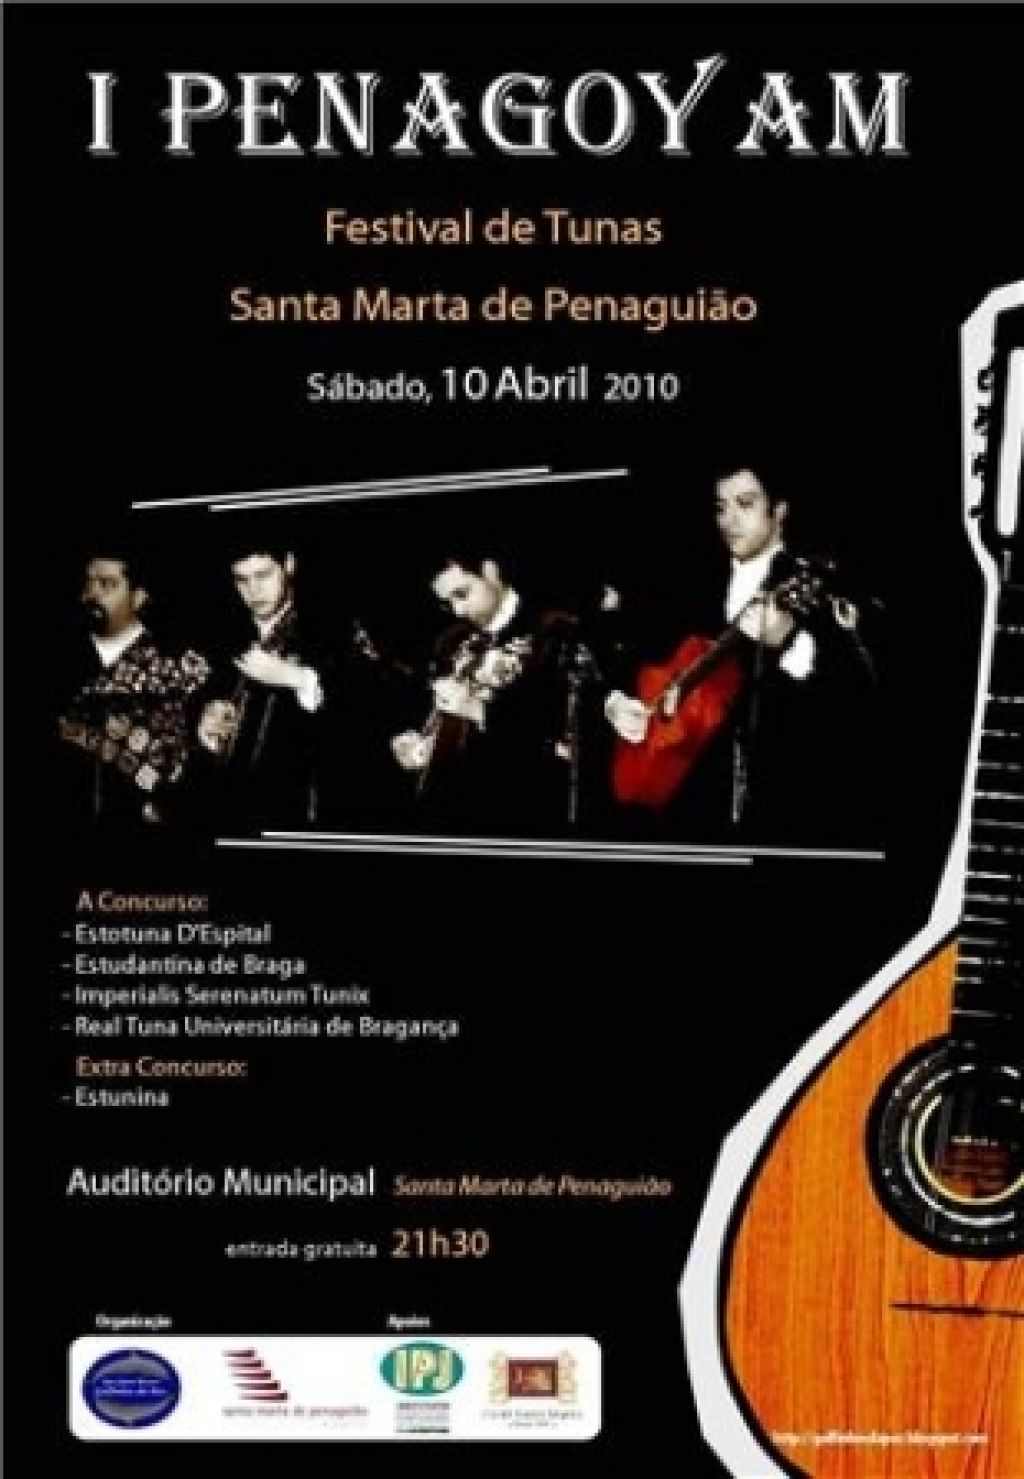 I PENAGOYAM – Festival de Tunas de Santa Marta de Penaguião